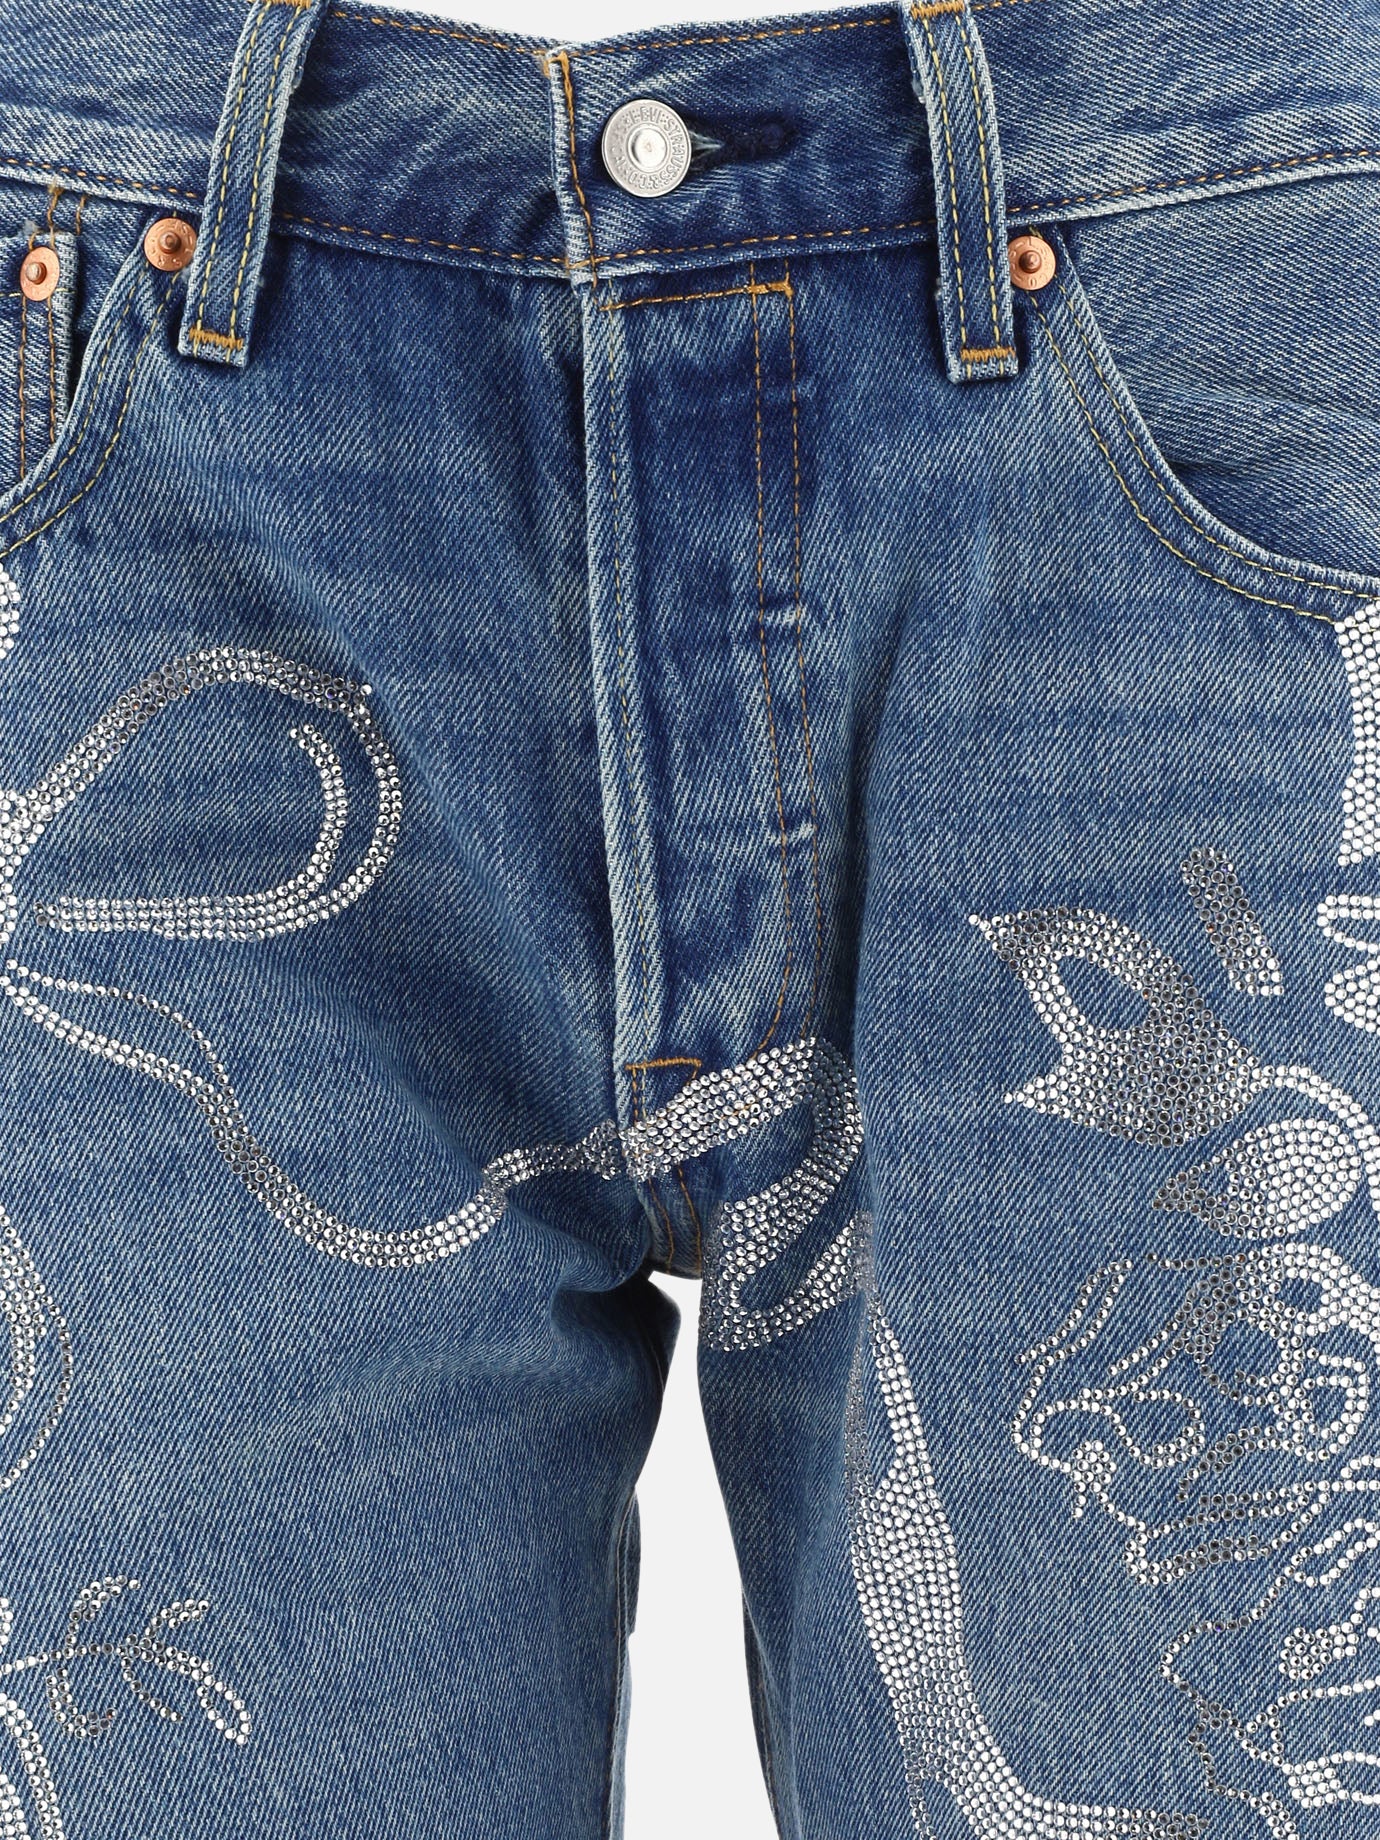 "Collina Strada X Levi's" jeans